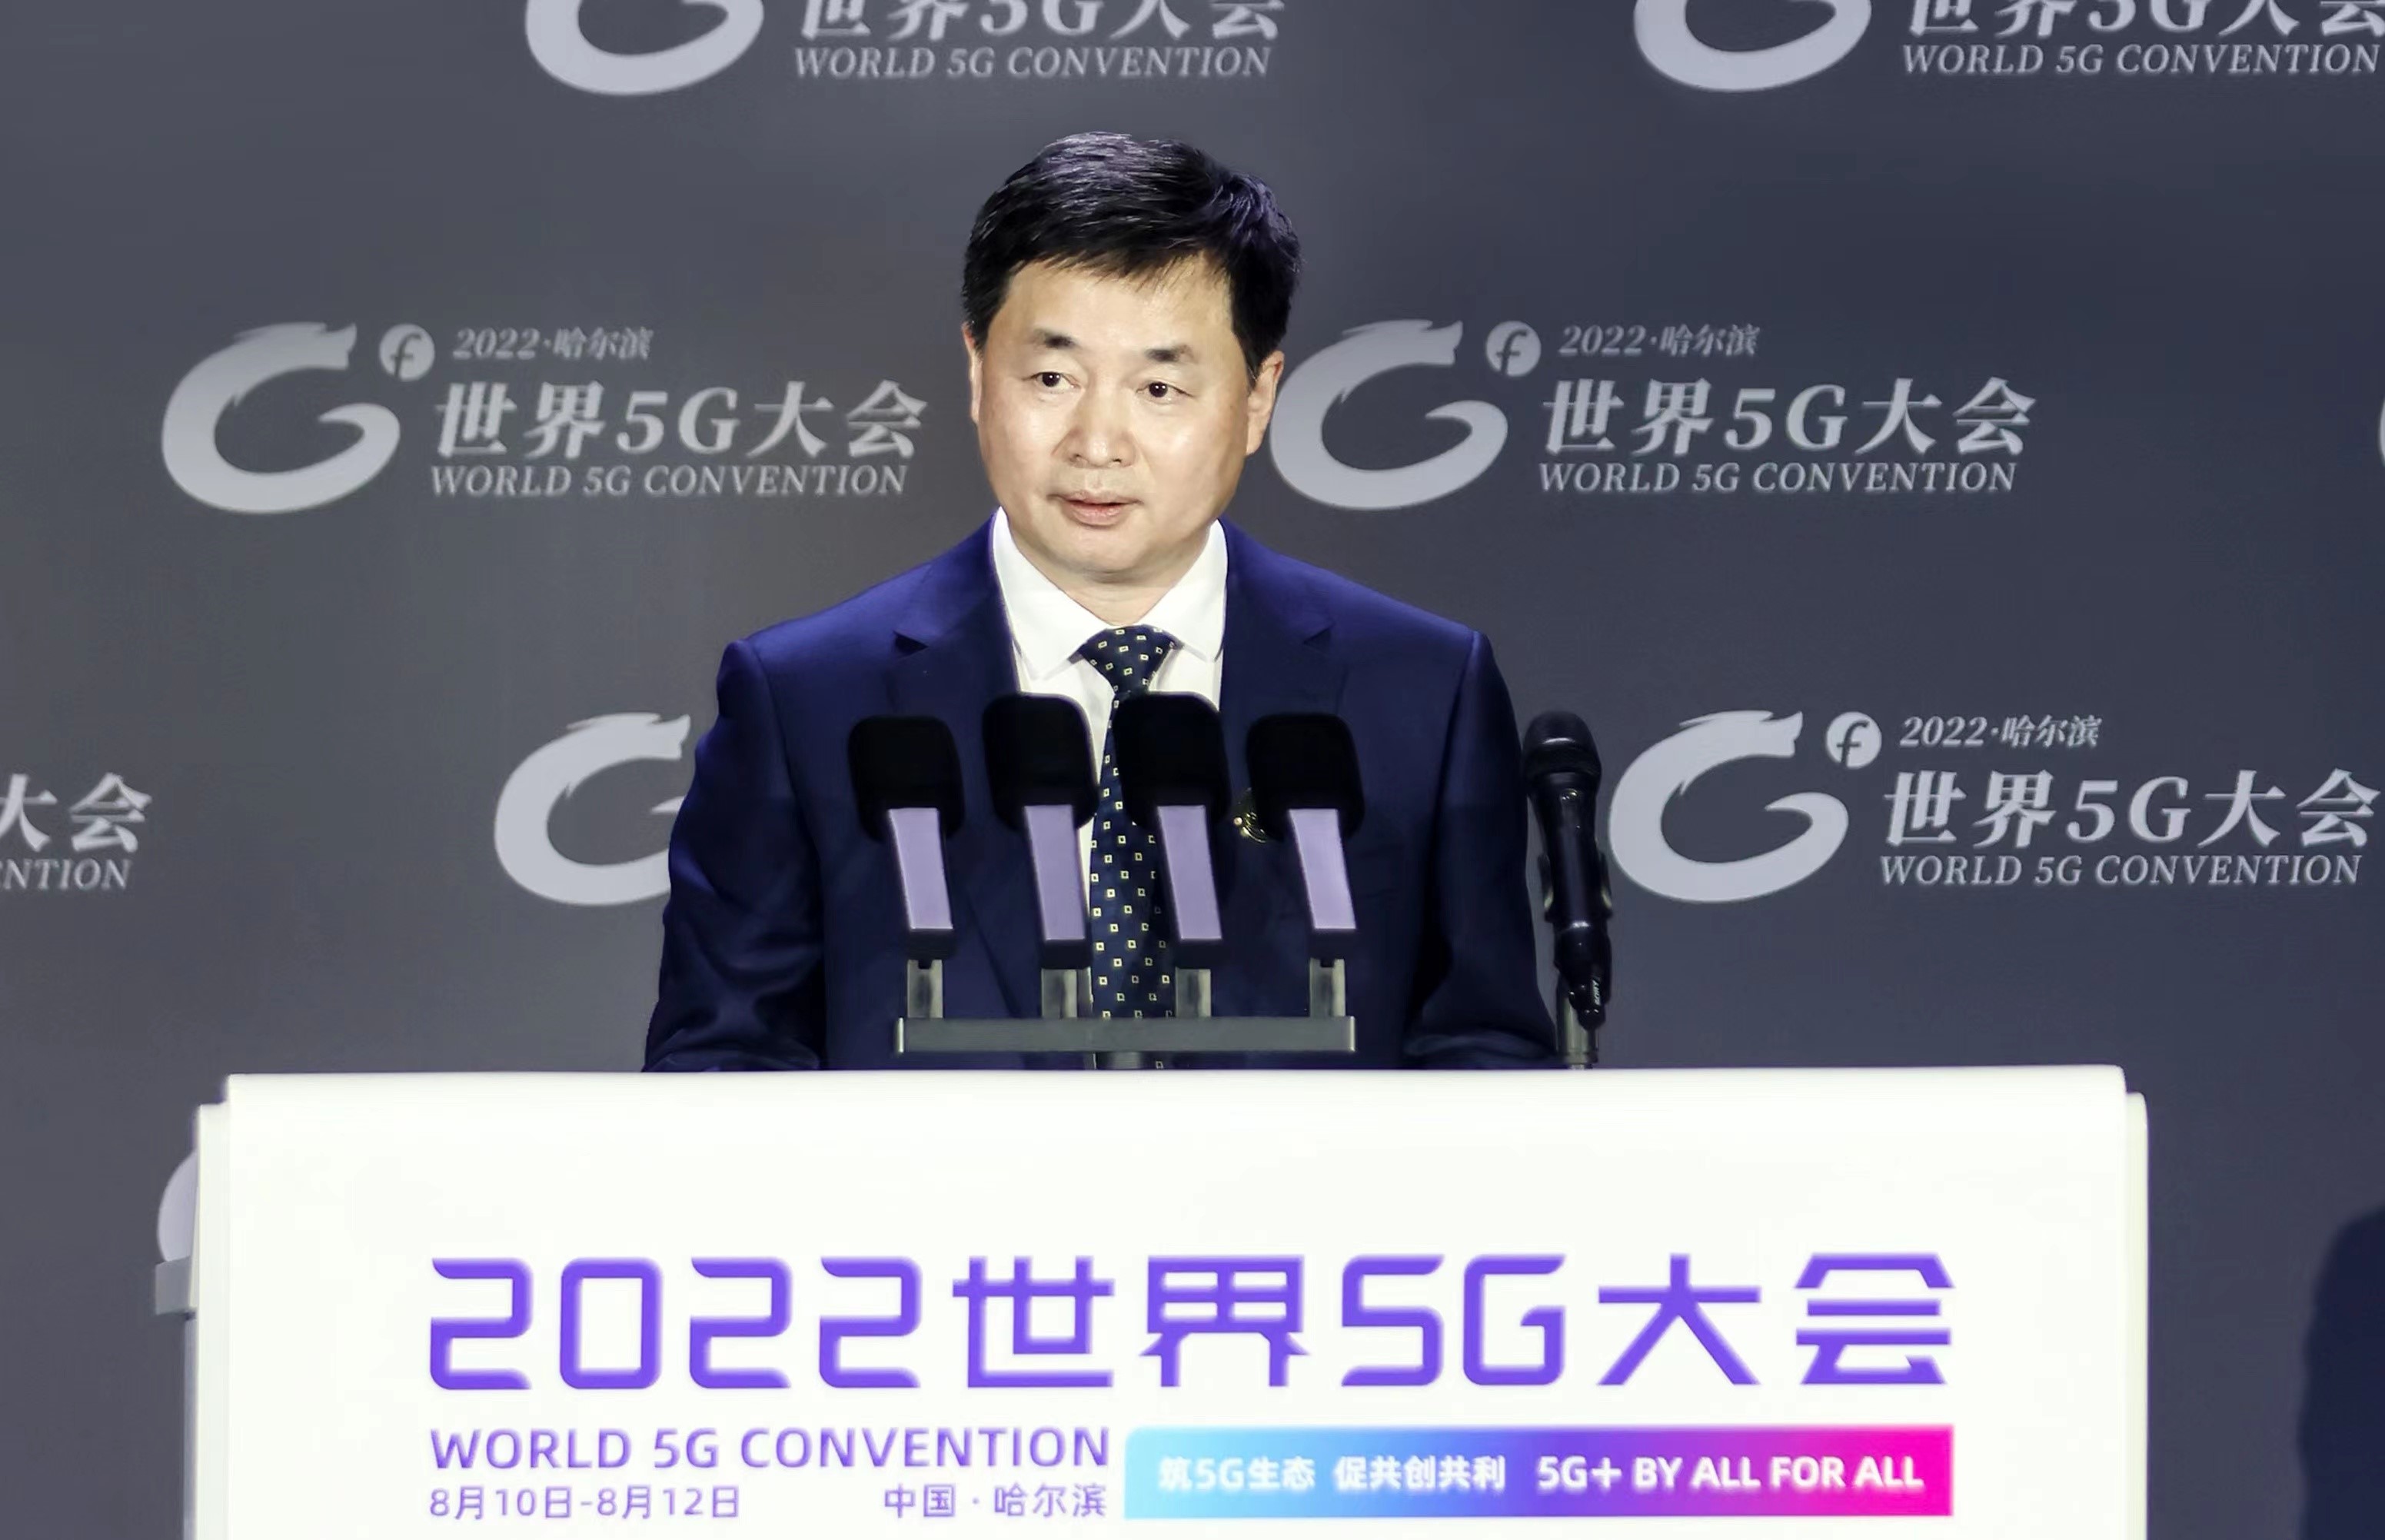 中國電信董事長柯瑞文在世界5G大會發表主題演講